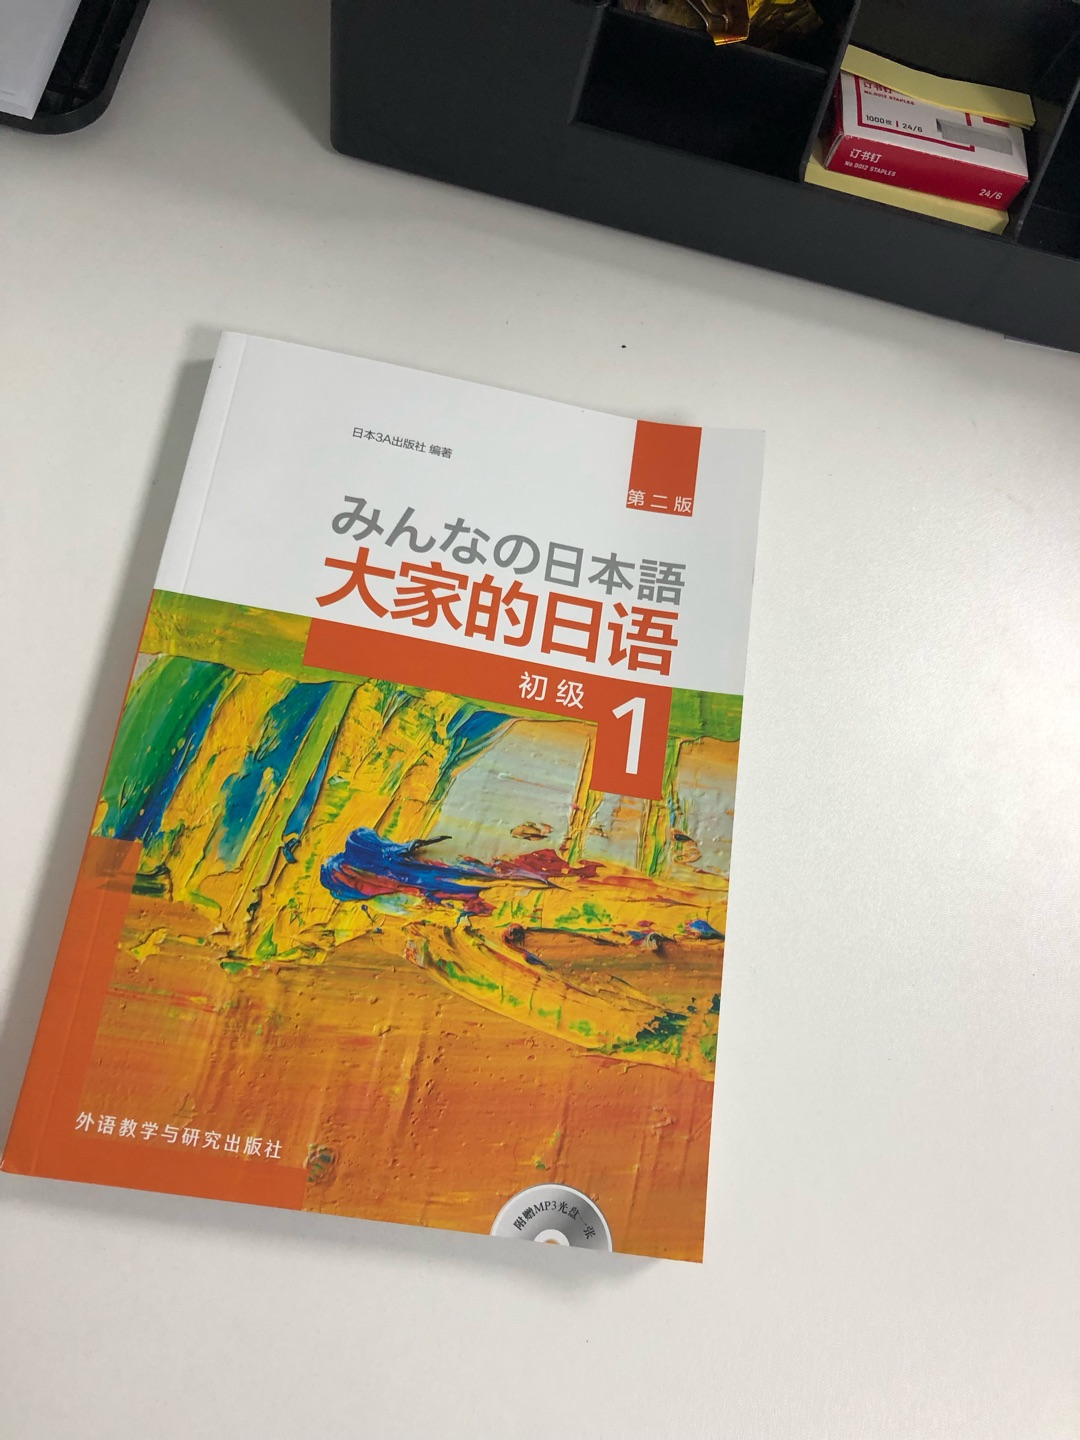 这本书是日本那边编写的很有日本式思维，推荐初学者或者是打算去日本的同学可以购买～